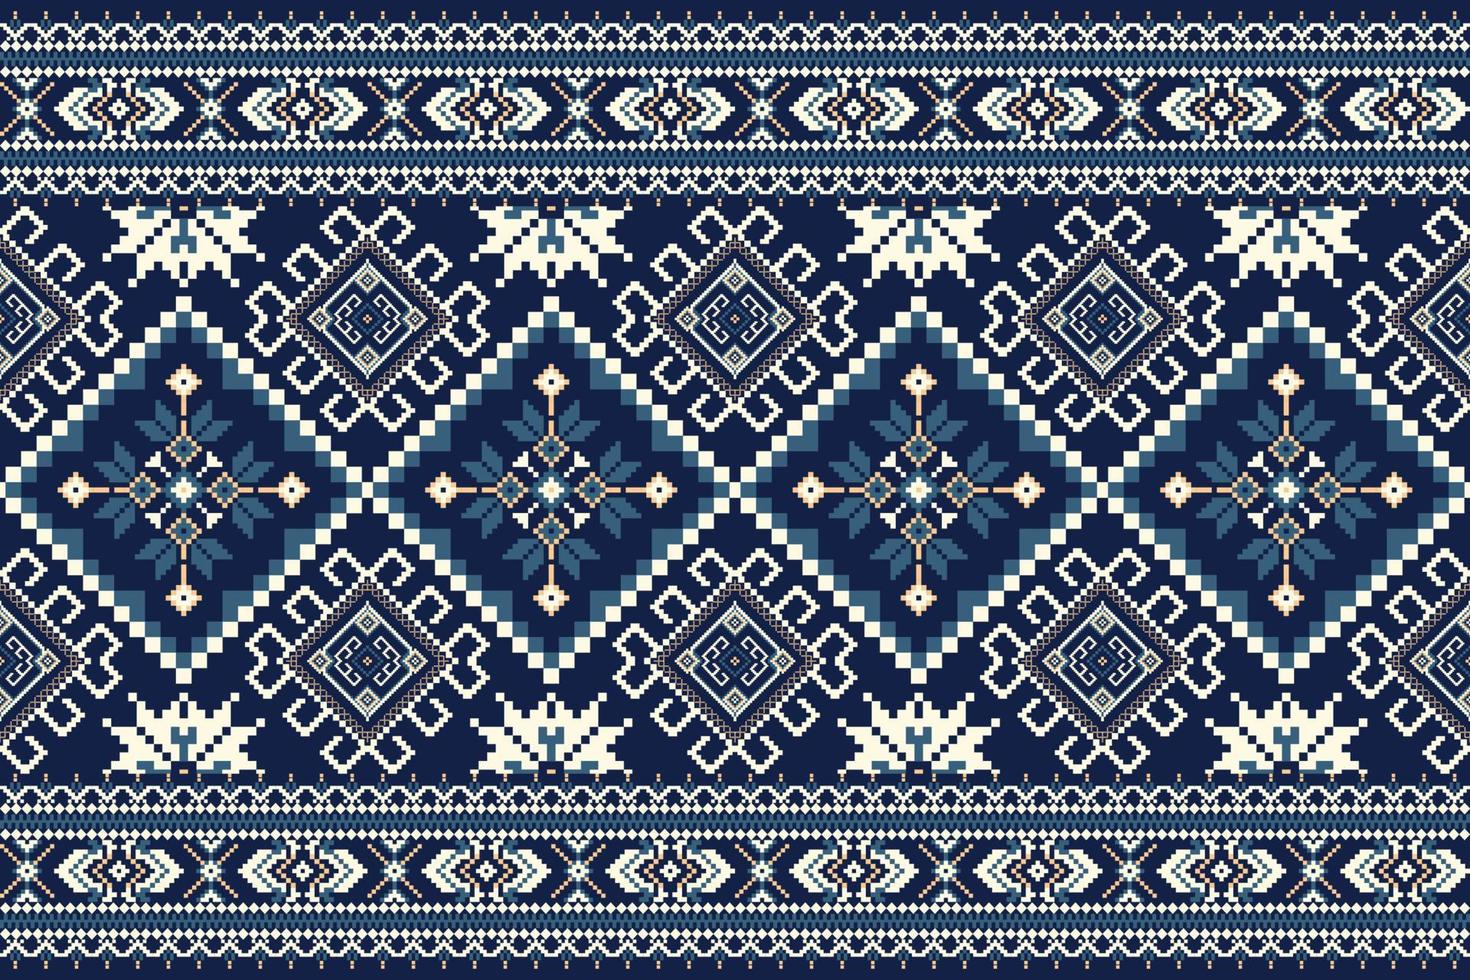 blommig korsa sy broderi på Marin blå bakgrund.geometrisk etnisk orientalisk mönster traditionell.aztec stil abstrakt vektor illustration.design för textur, tyg, kläder, inslagning, dekoration.